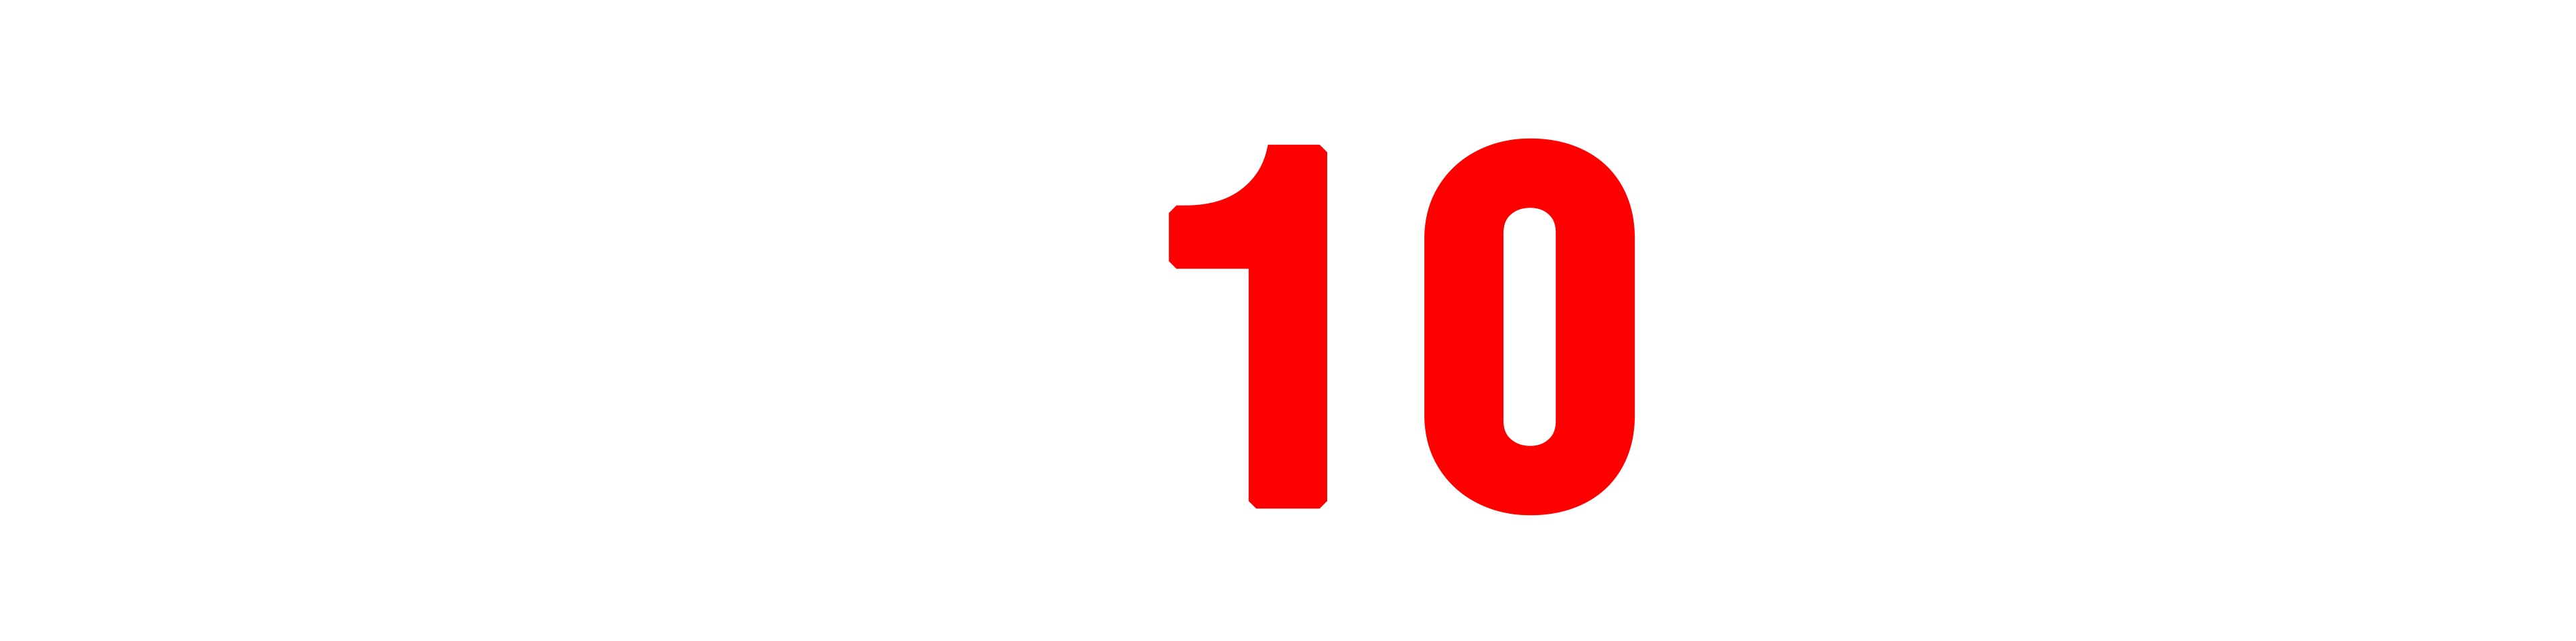 Топ 10 Волгоград